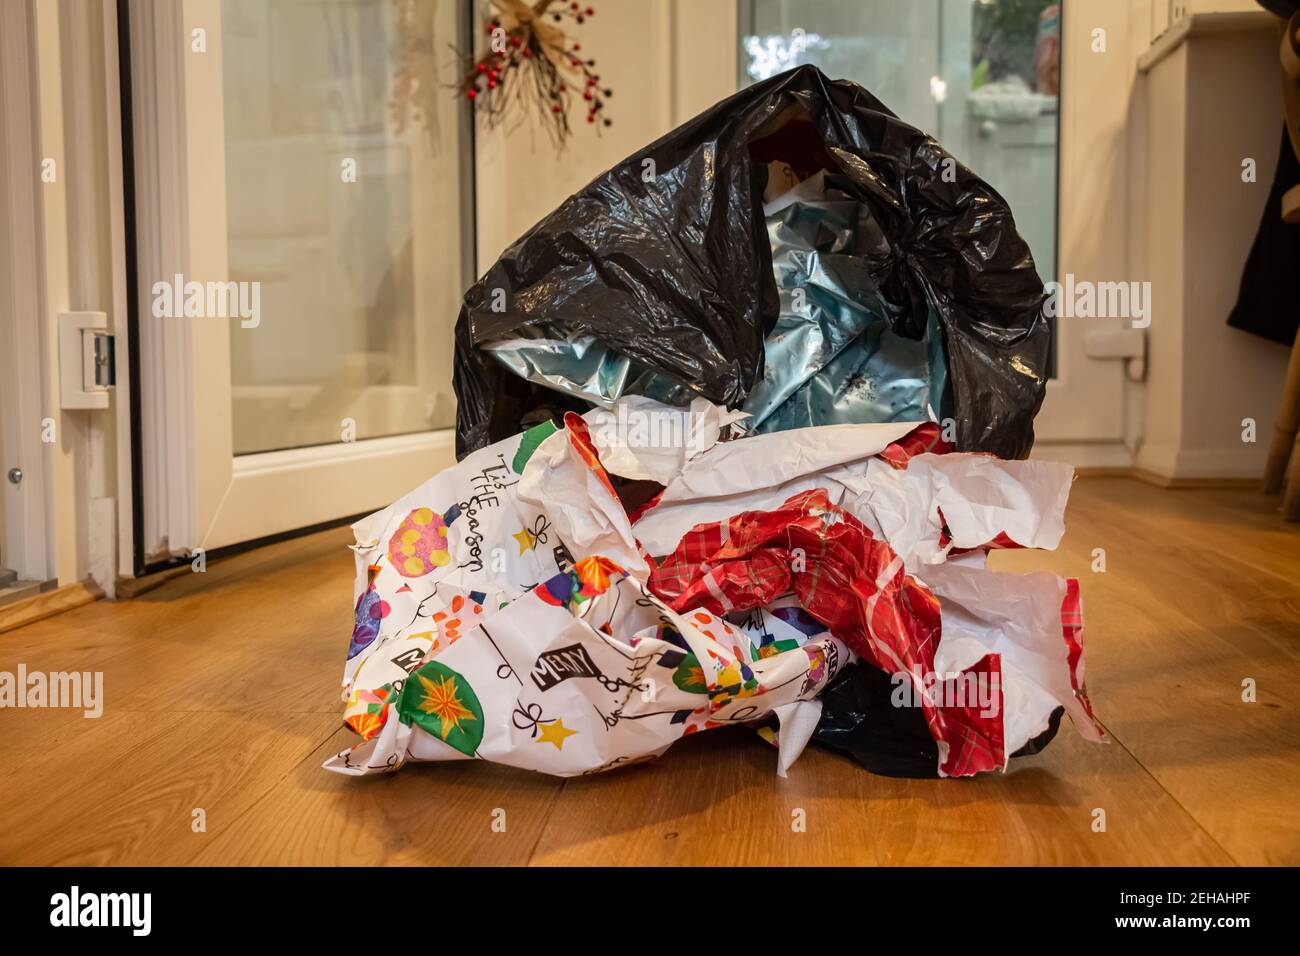 Weihnachten Verpackung Papierabfall in einem Müllbeutel liegend auf einem Holzboden am Weihnachtstag, nachdem Geschenke geöffnet worden waren Stockfoto